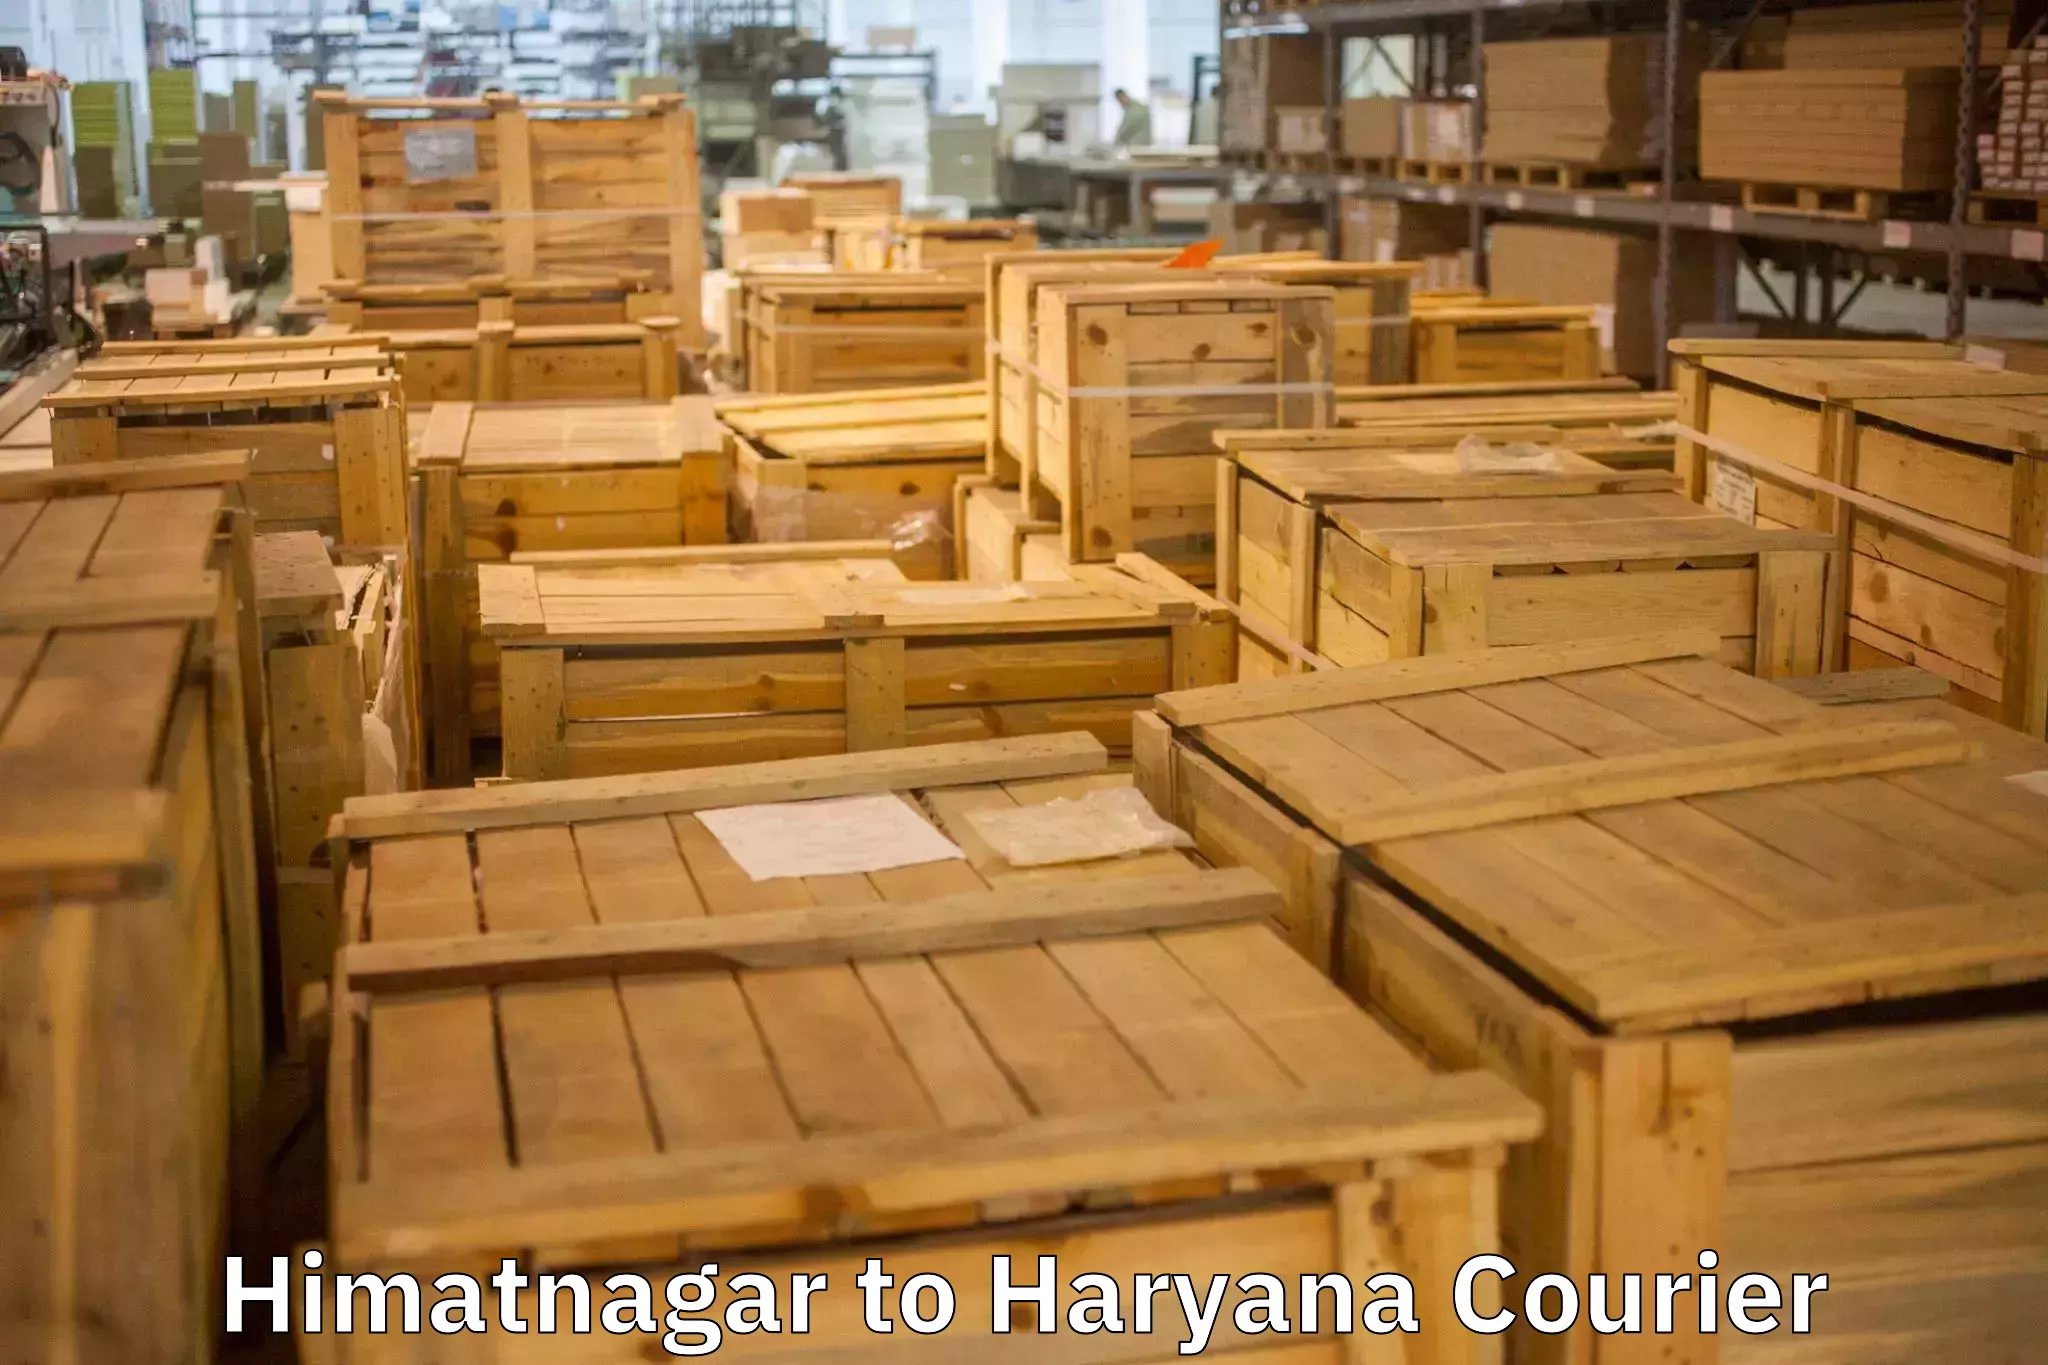 Efficient packing services Himatnagar to Faridabad